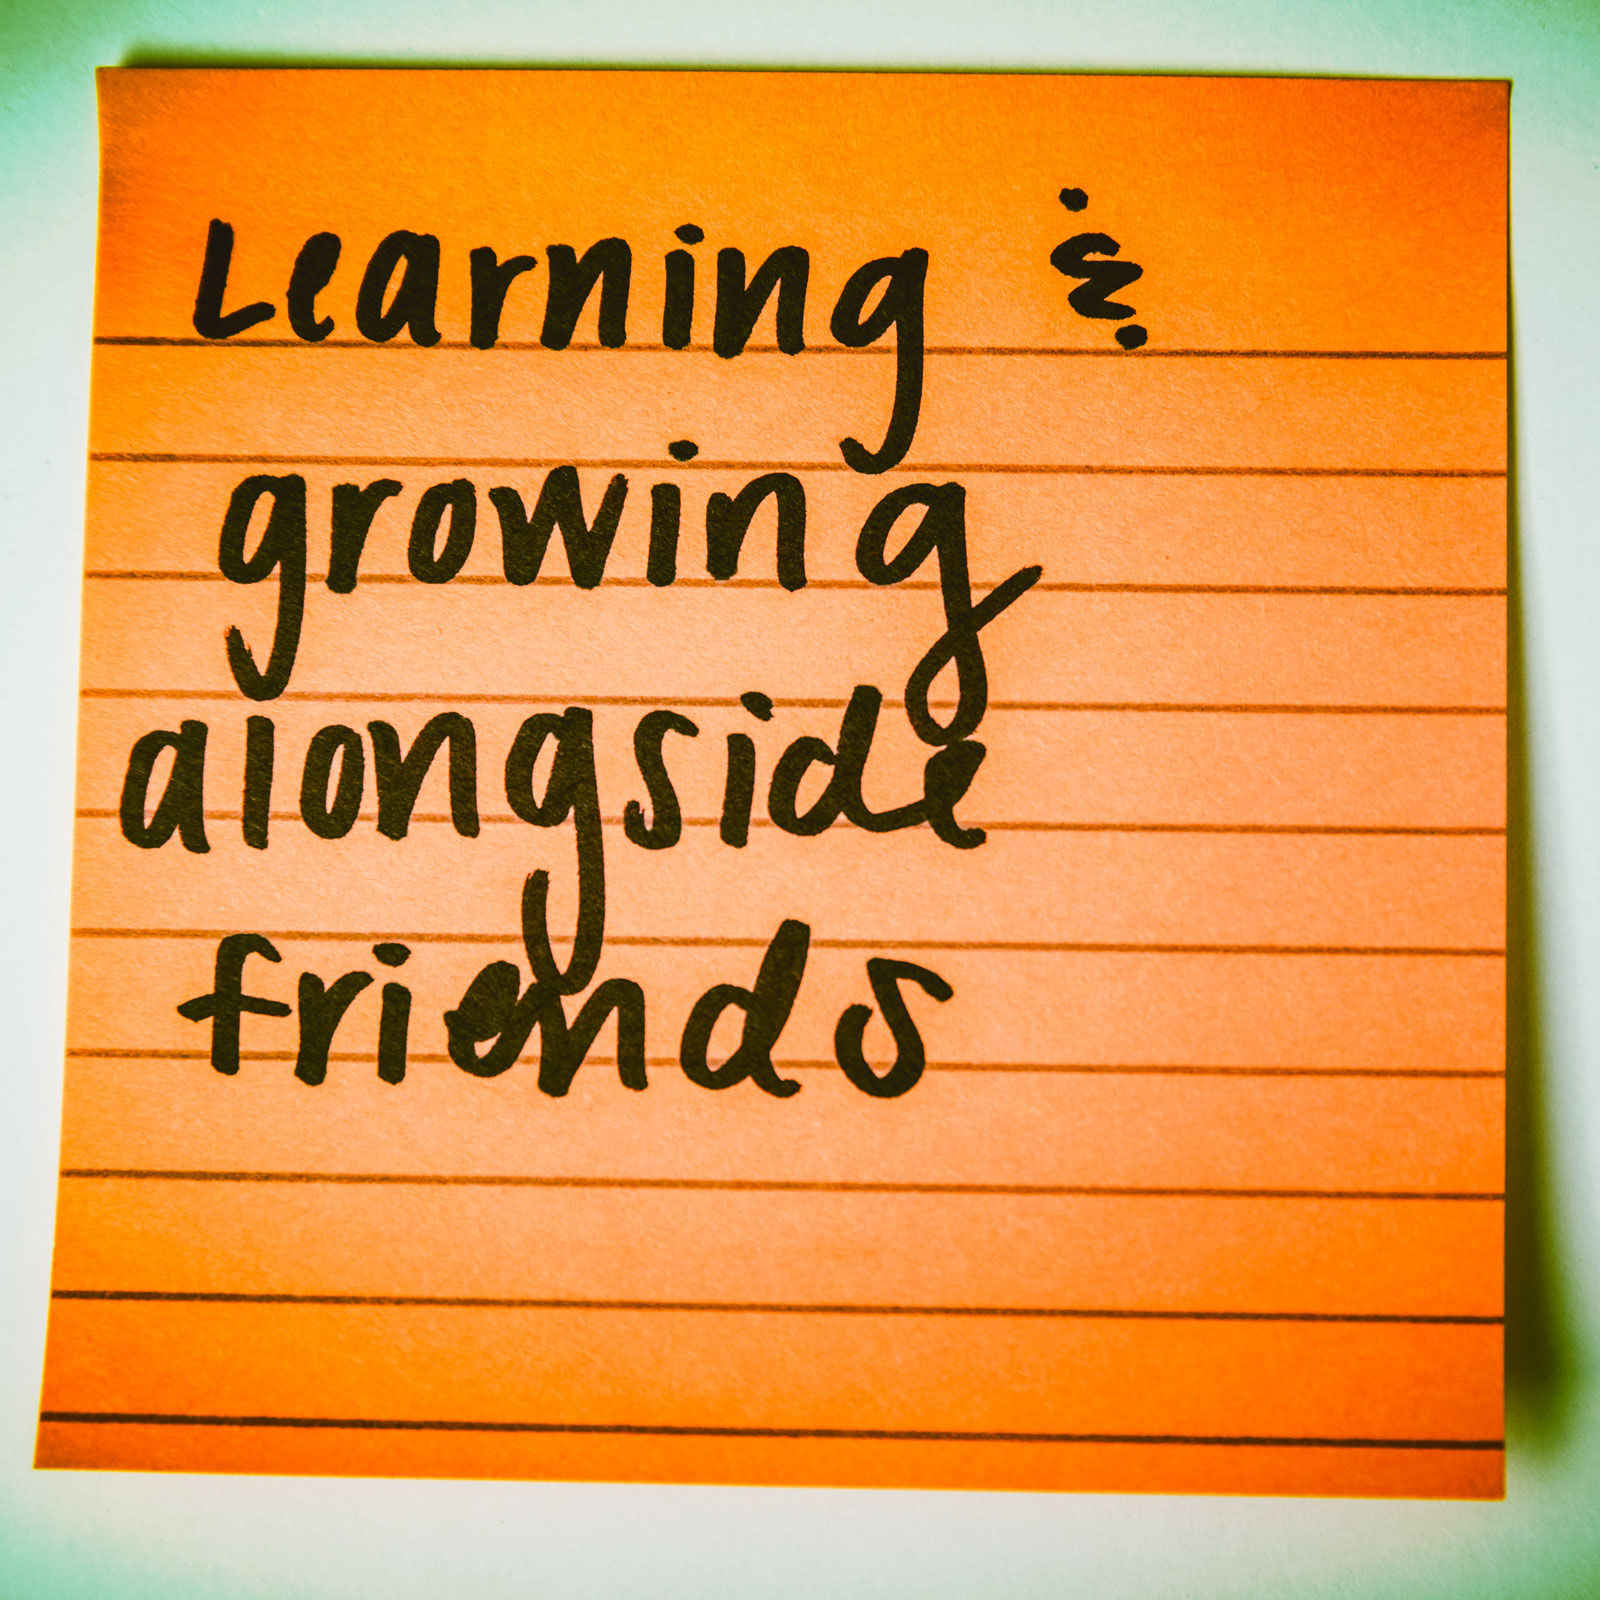 learning & growing alongside friends